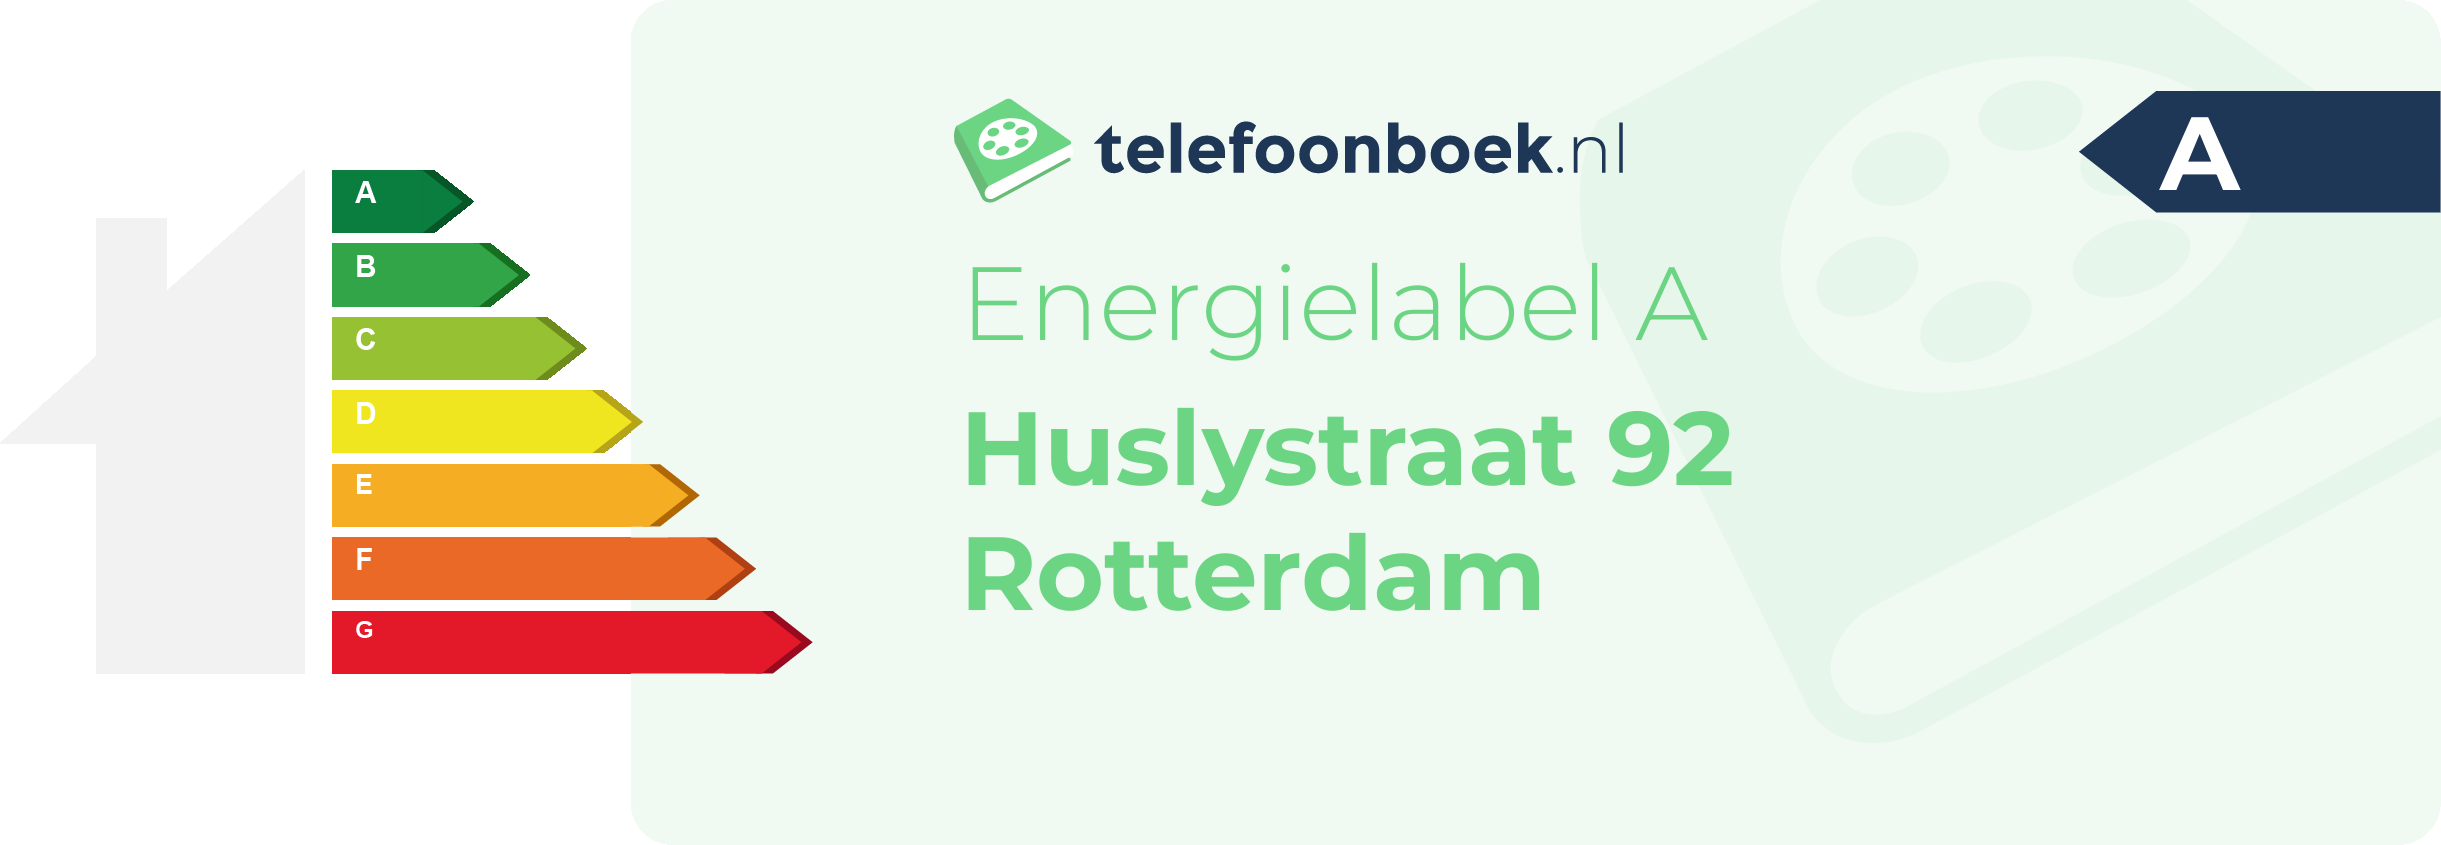 Energielabel Huslystraat 92 Rotterdam